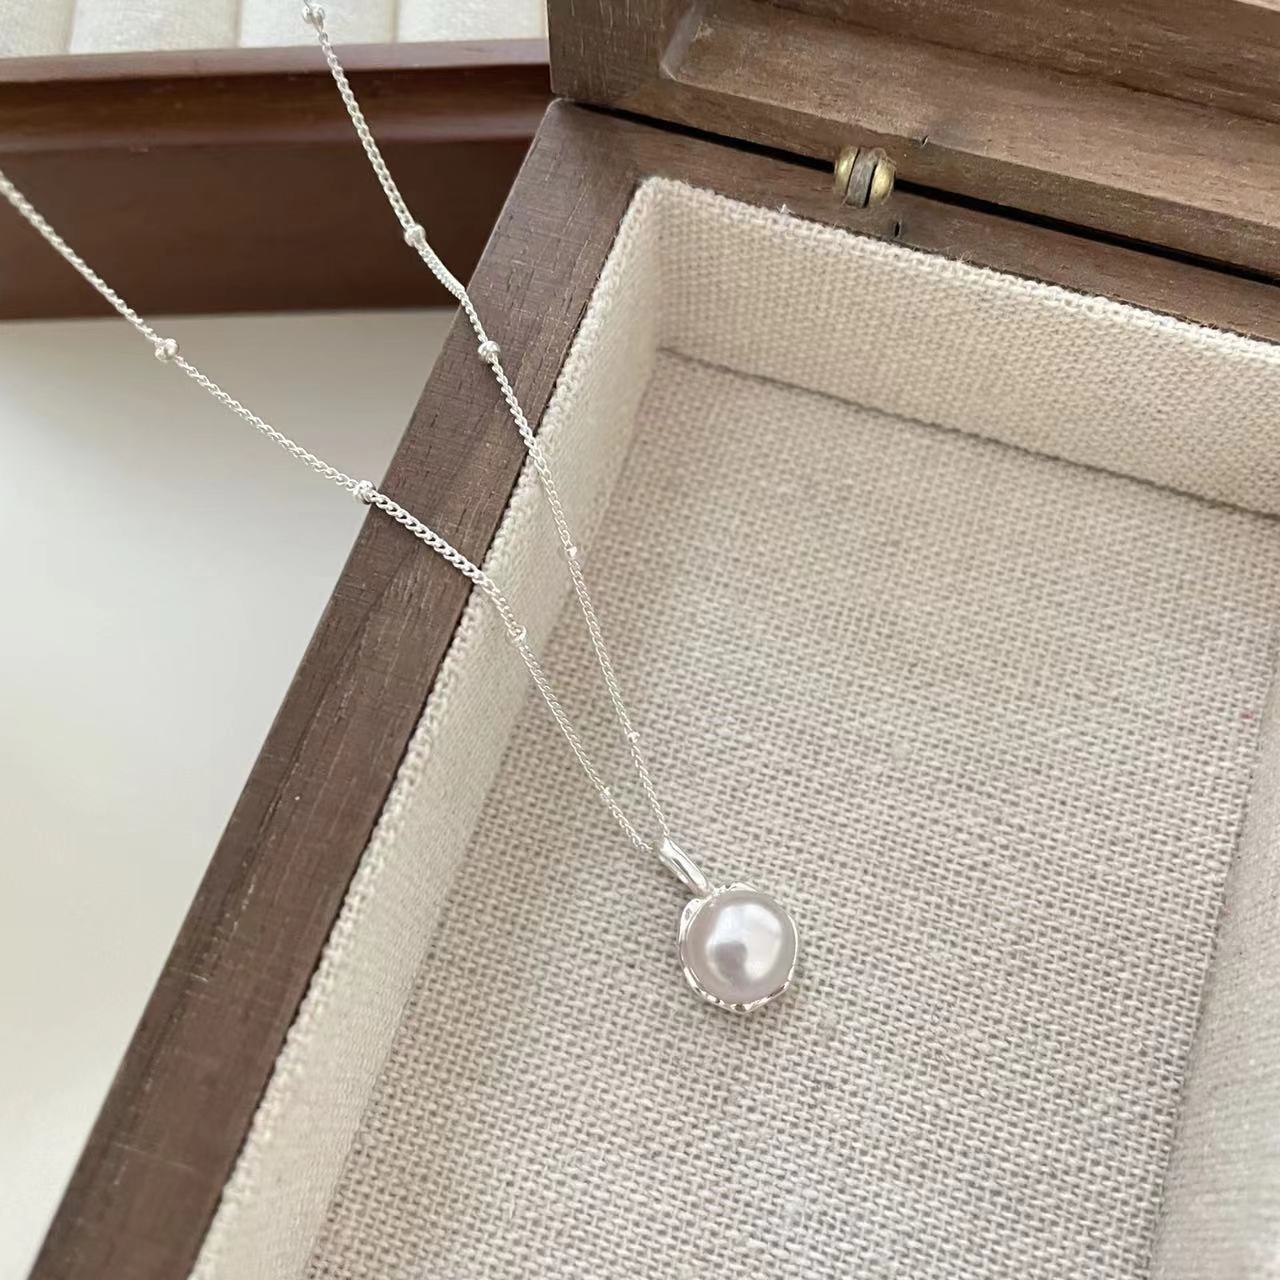 Niche High-Grade Exquisite Single Pearl Necklace Women's Versatile Accessories Temperament Clavicle Chain Non-Fading New Product